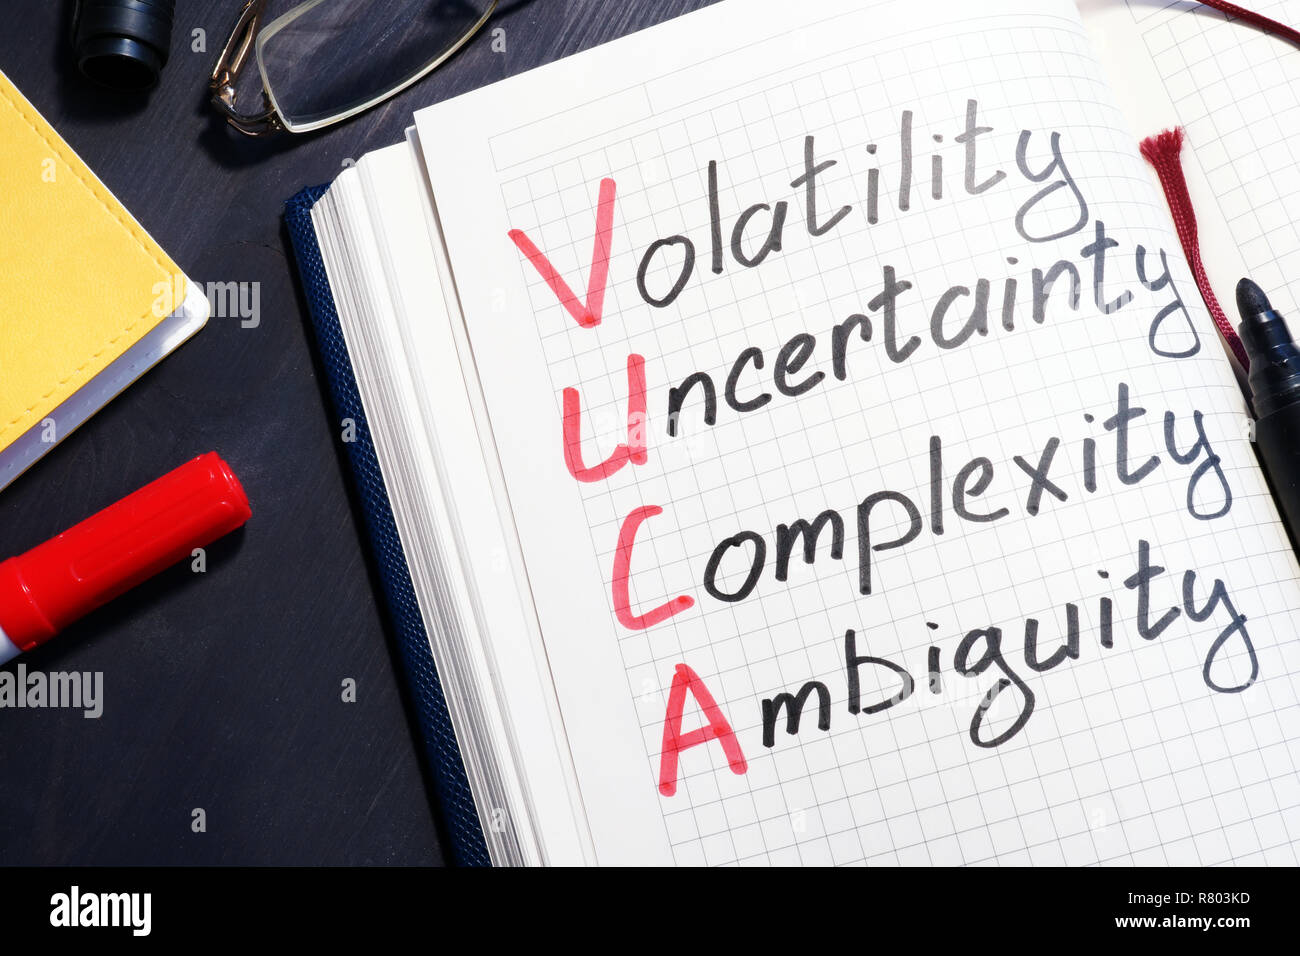 VUCA Volatilität, Unsicherheit, Komplexität, Mehrdeutigkeit in eine Notiz geschrieben. Stockfoto